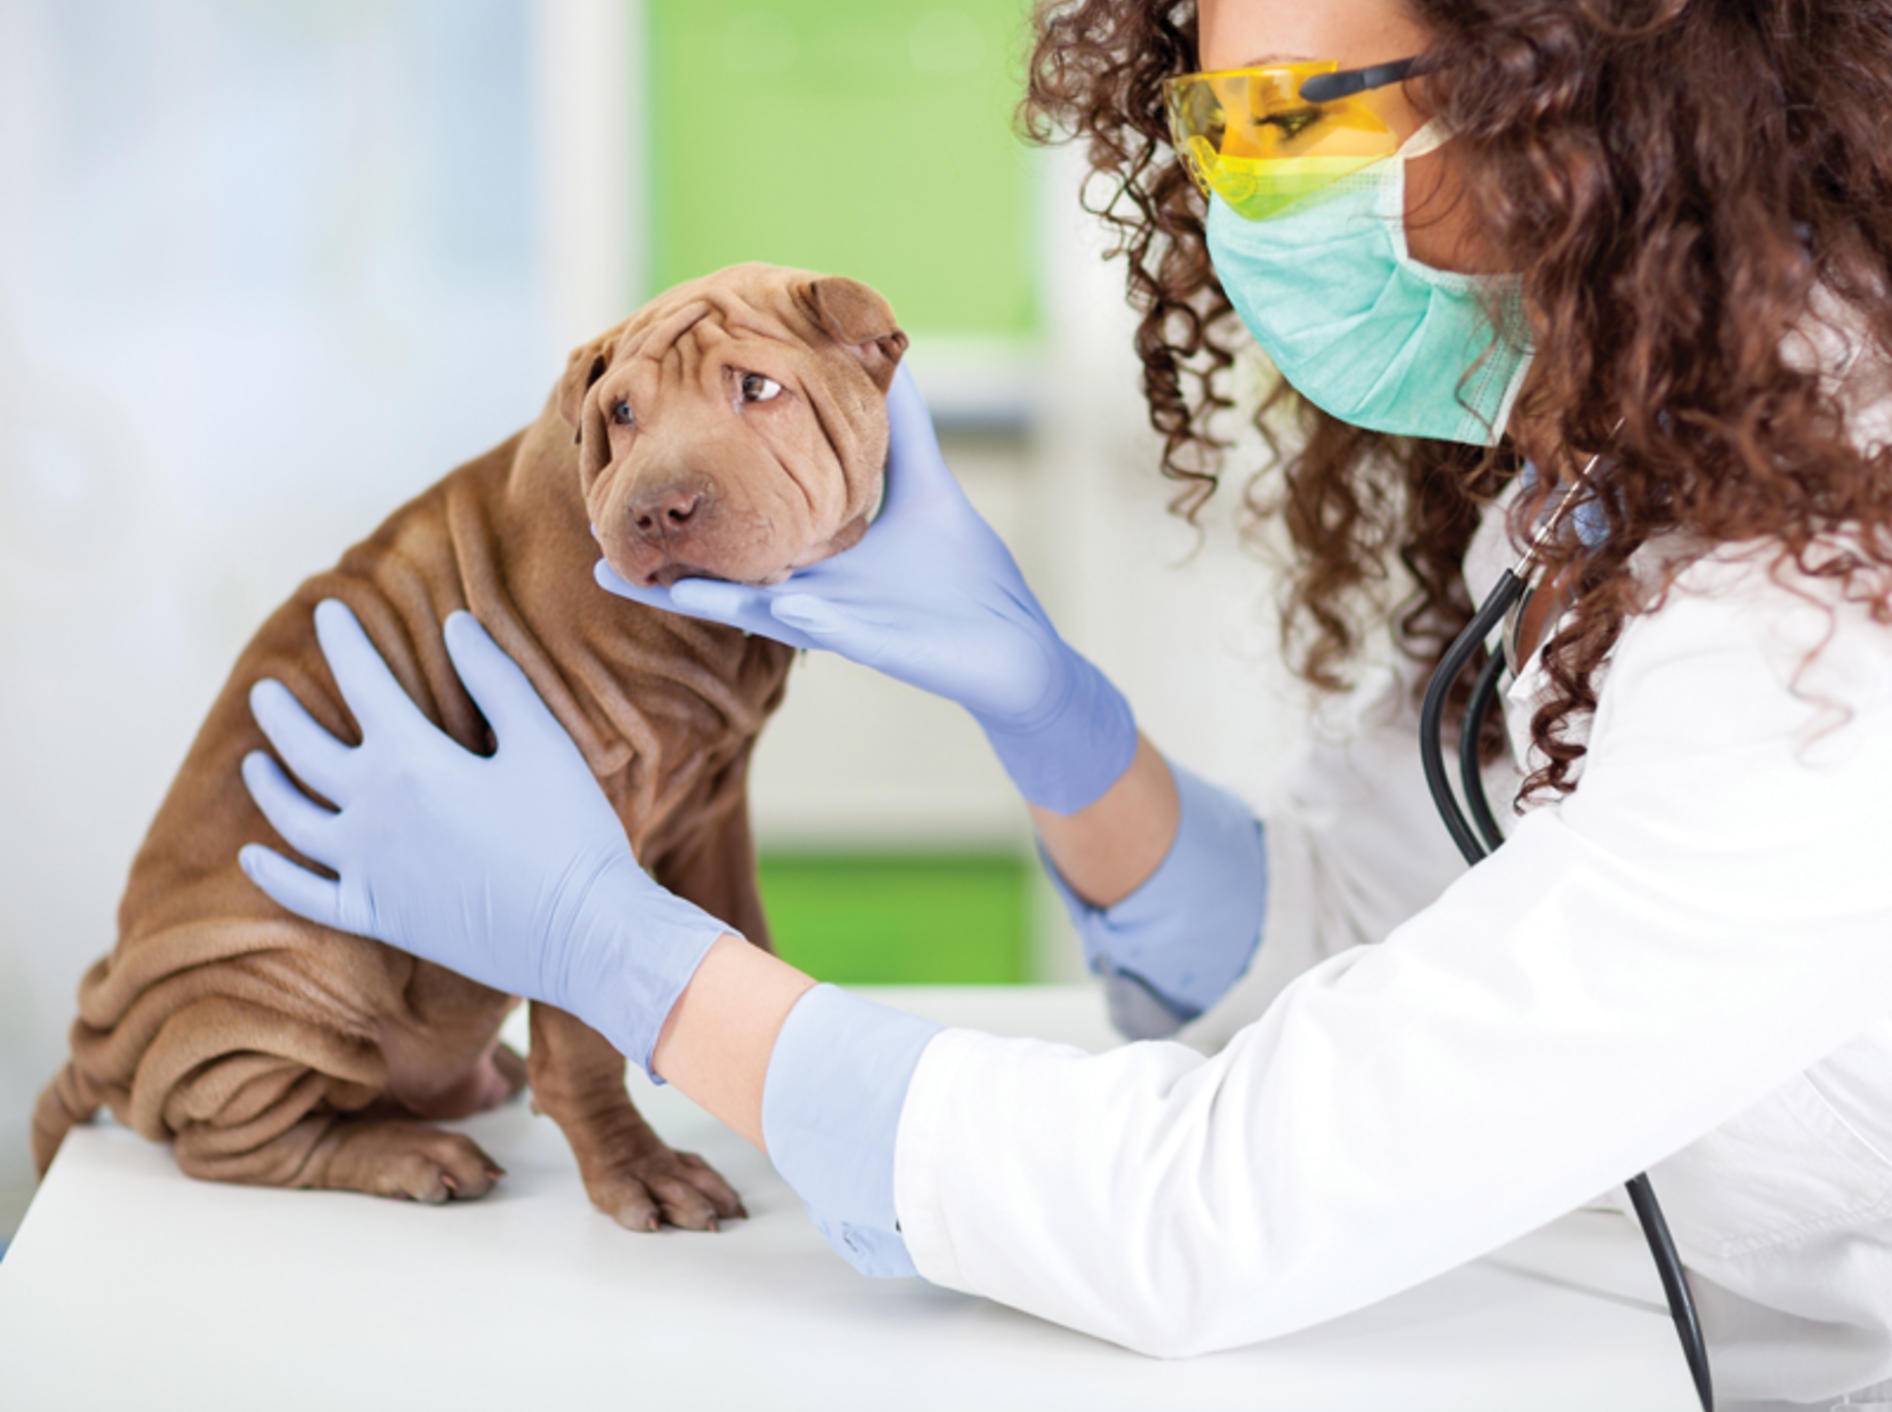 Armer kleiner Shar-Pei! Bei einem Darmverschluss muss ein Hund sofort zum Tierarzt! – Shutterstock / VP Photo Studio